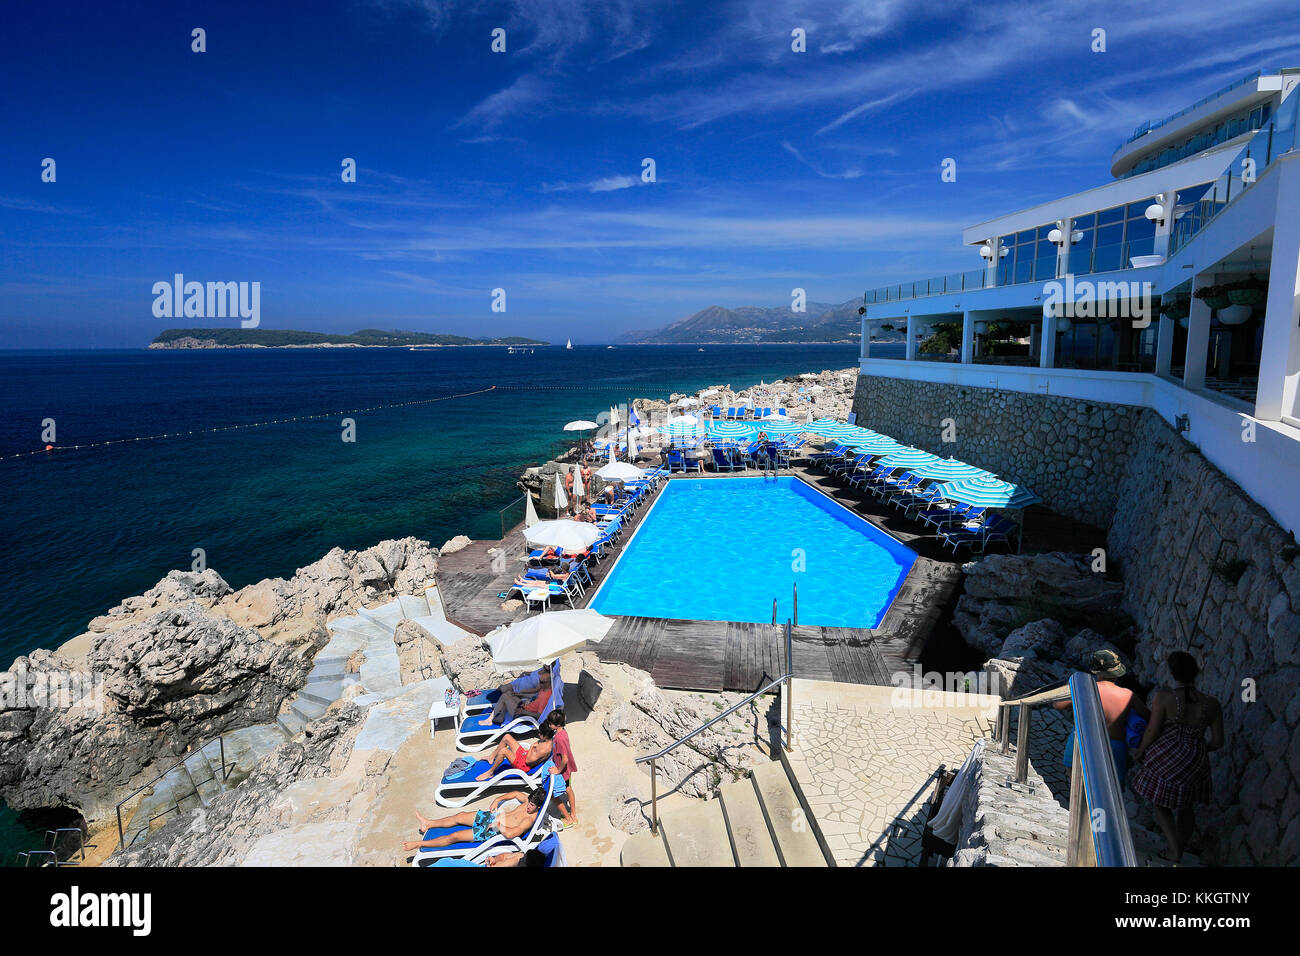 El Hotel Ariston, de Lapad de Dubrovnik, la ciudad, la costa dálmata, Mar Adriático, Croacia, Europa. Foto de stock